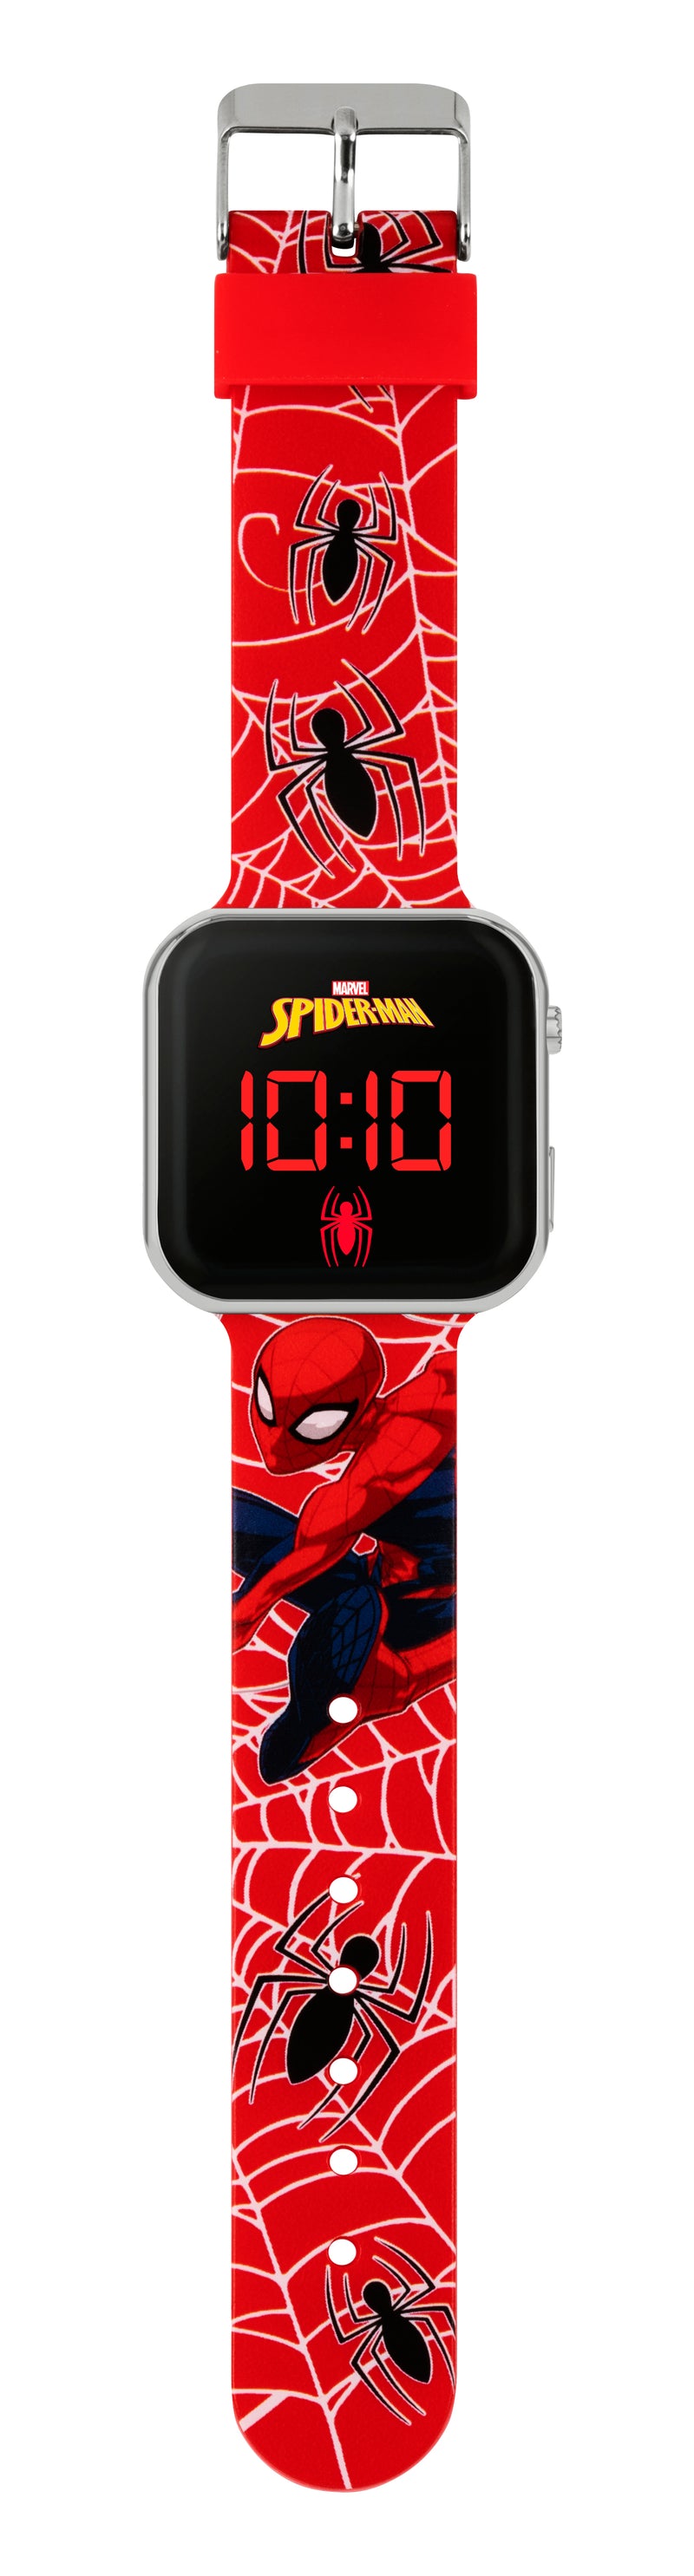 Spiderman LED Digital Watch